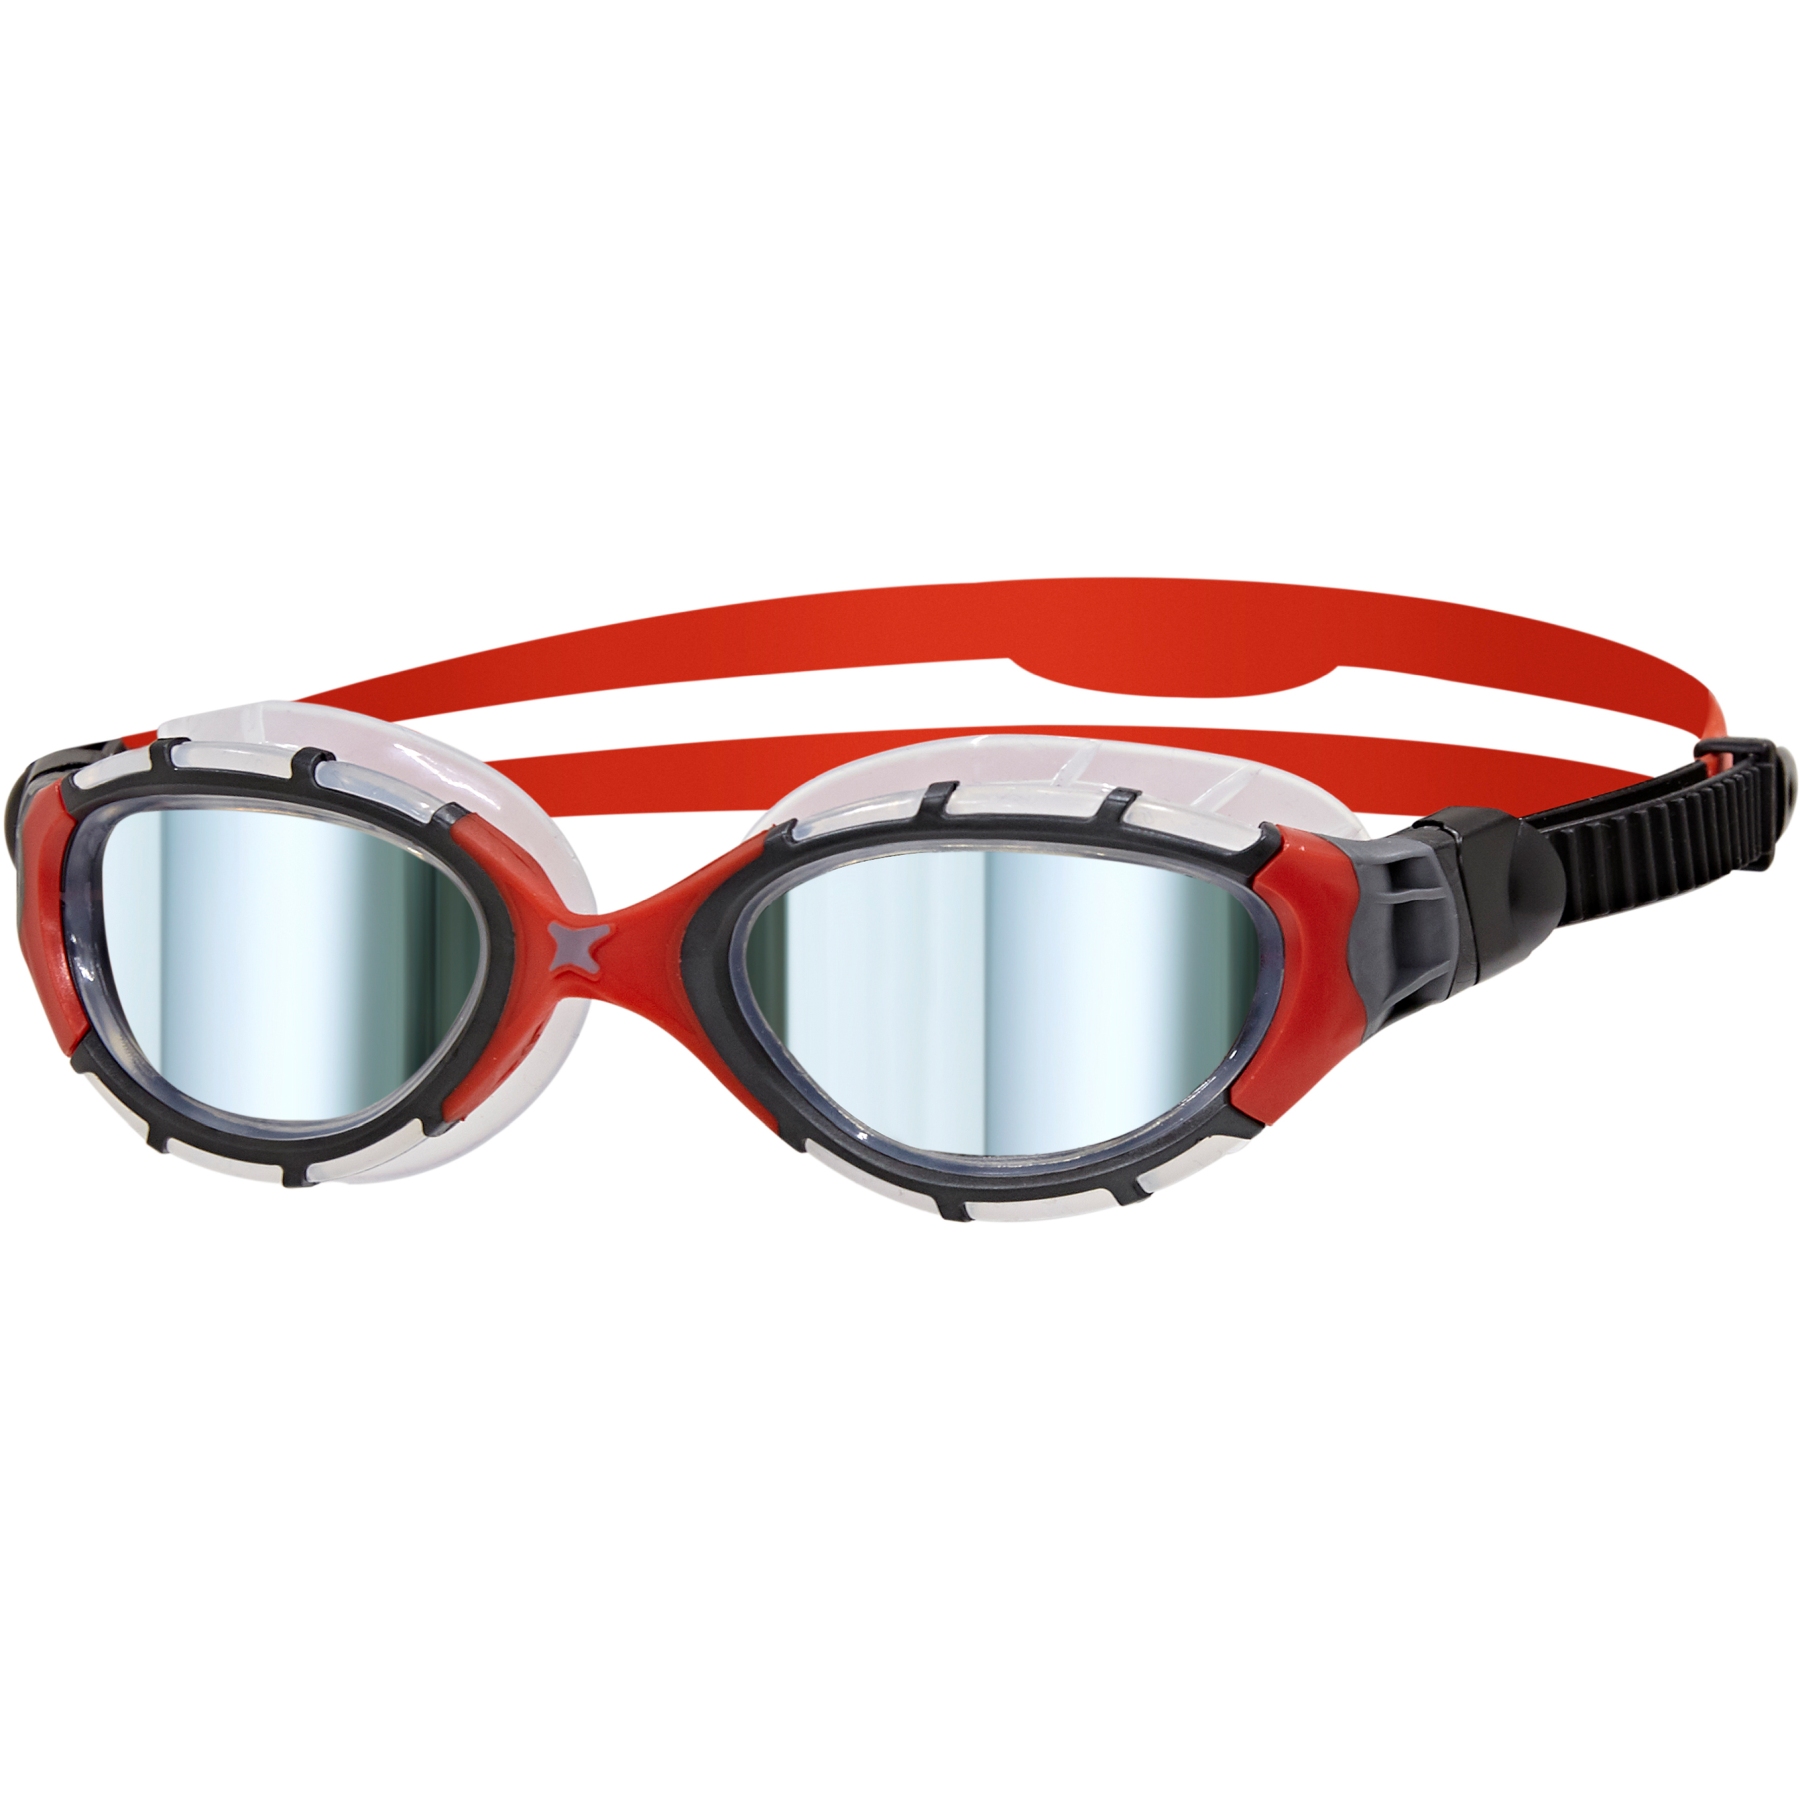 Produktbild von Zoggs Predator Flex Titanium Schwimmbrille - Verspiegelte Gläser - Small Fit - Schwarz/Rot